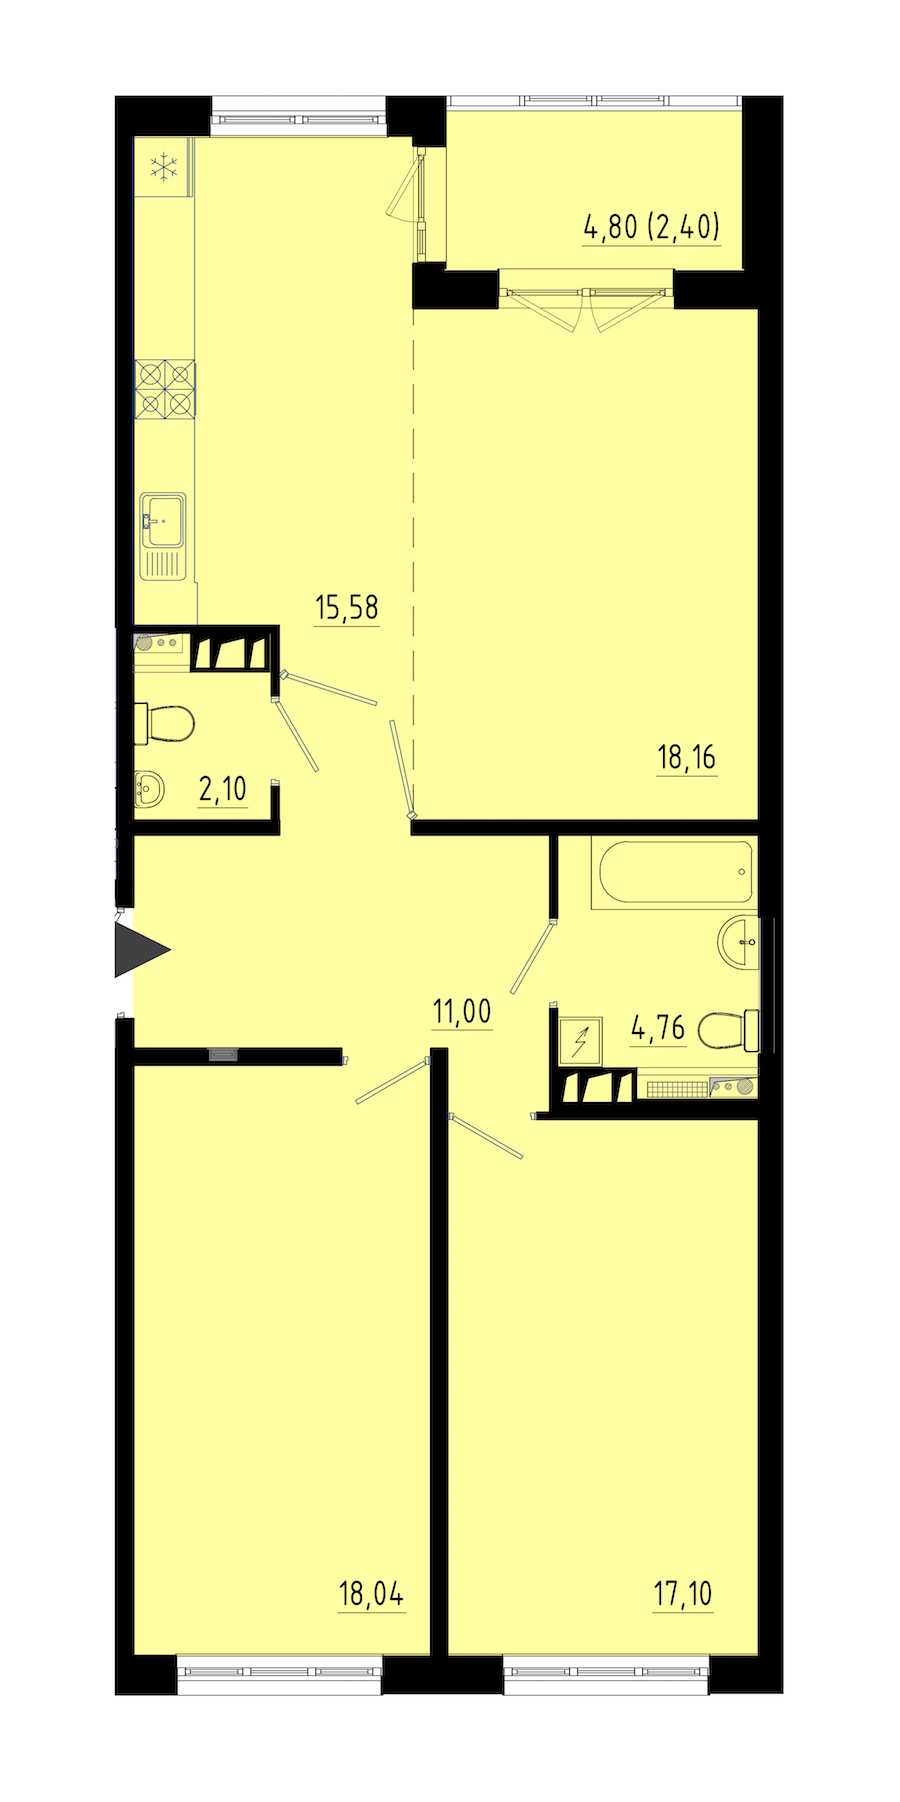 Двухкомнатная квартира в : площадь 86.7 м2 , этаж: 1 – купить в Санкт-Петербурге